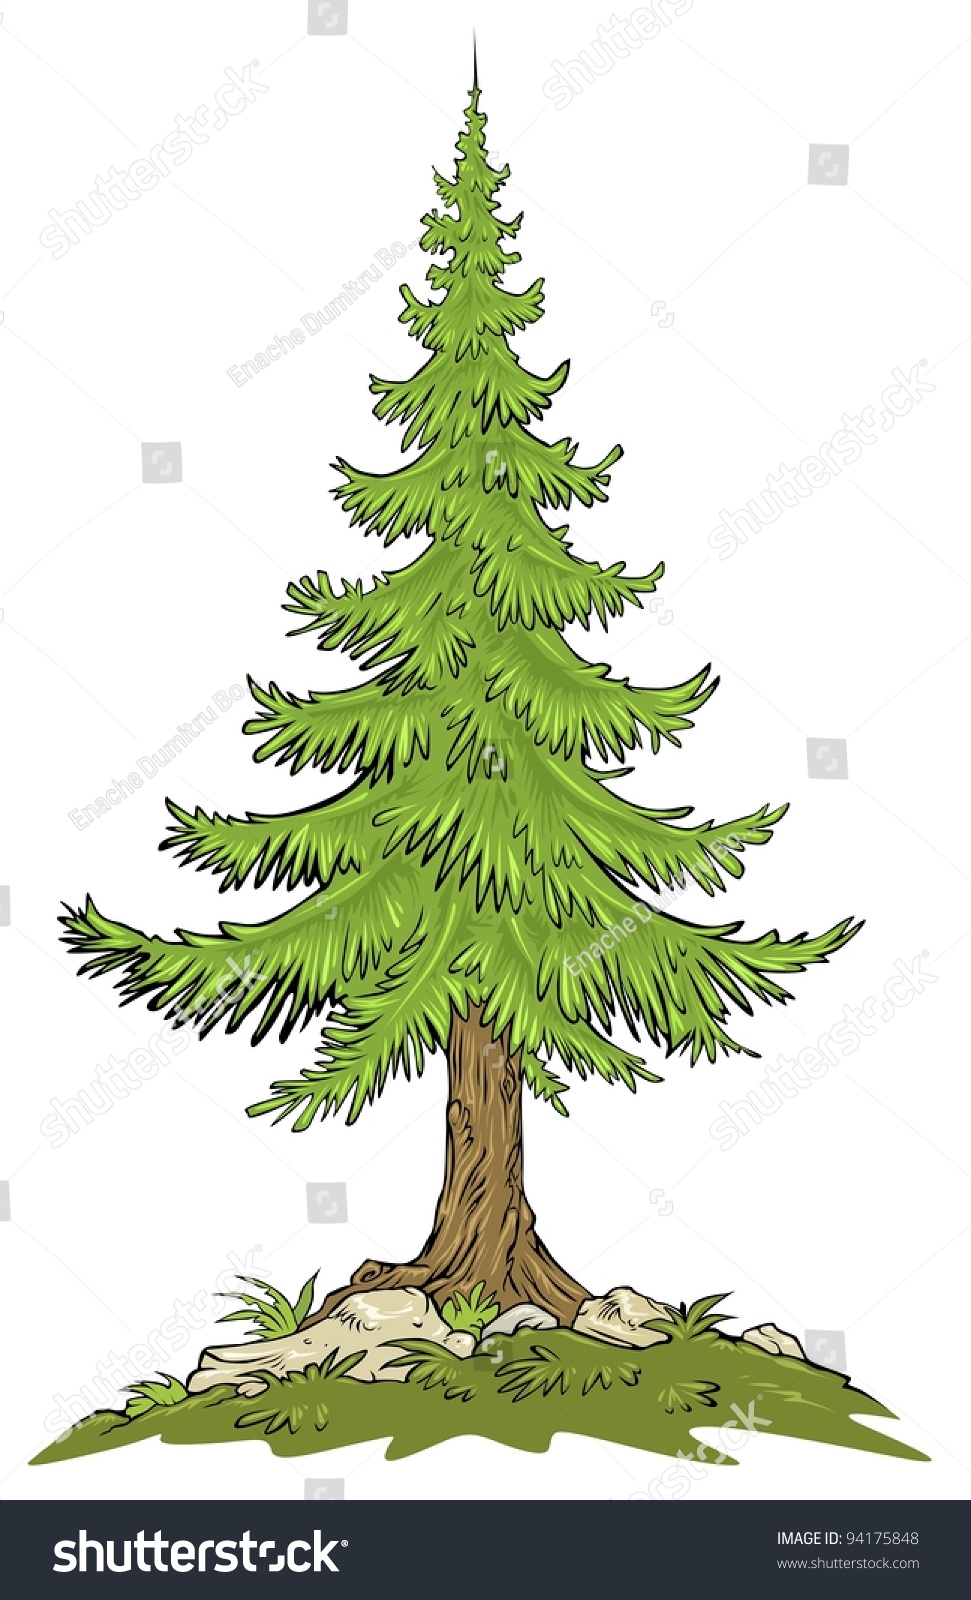 fir tree clipart - photo #32